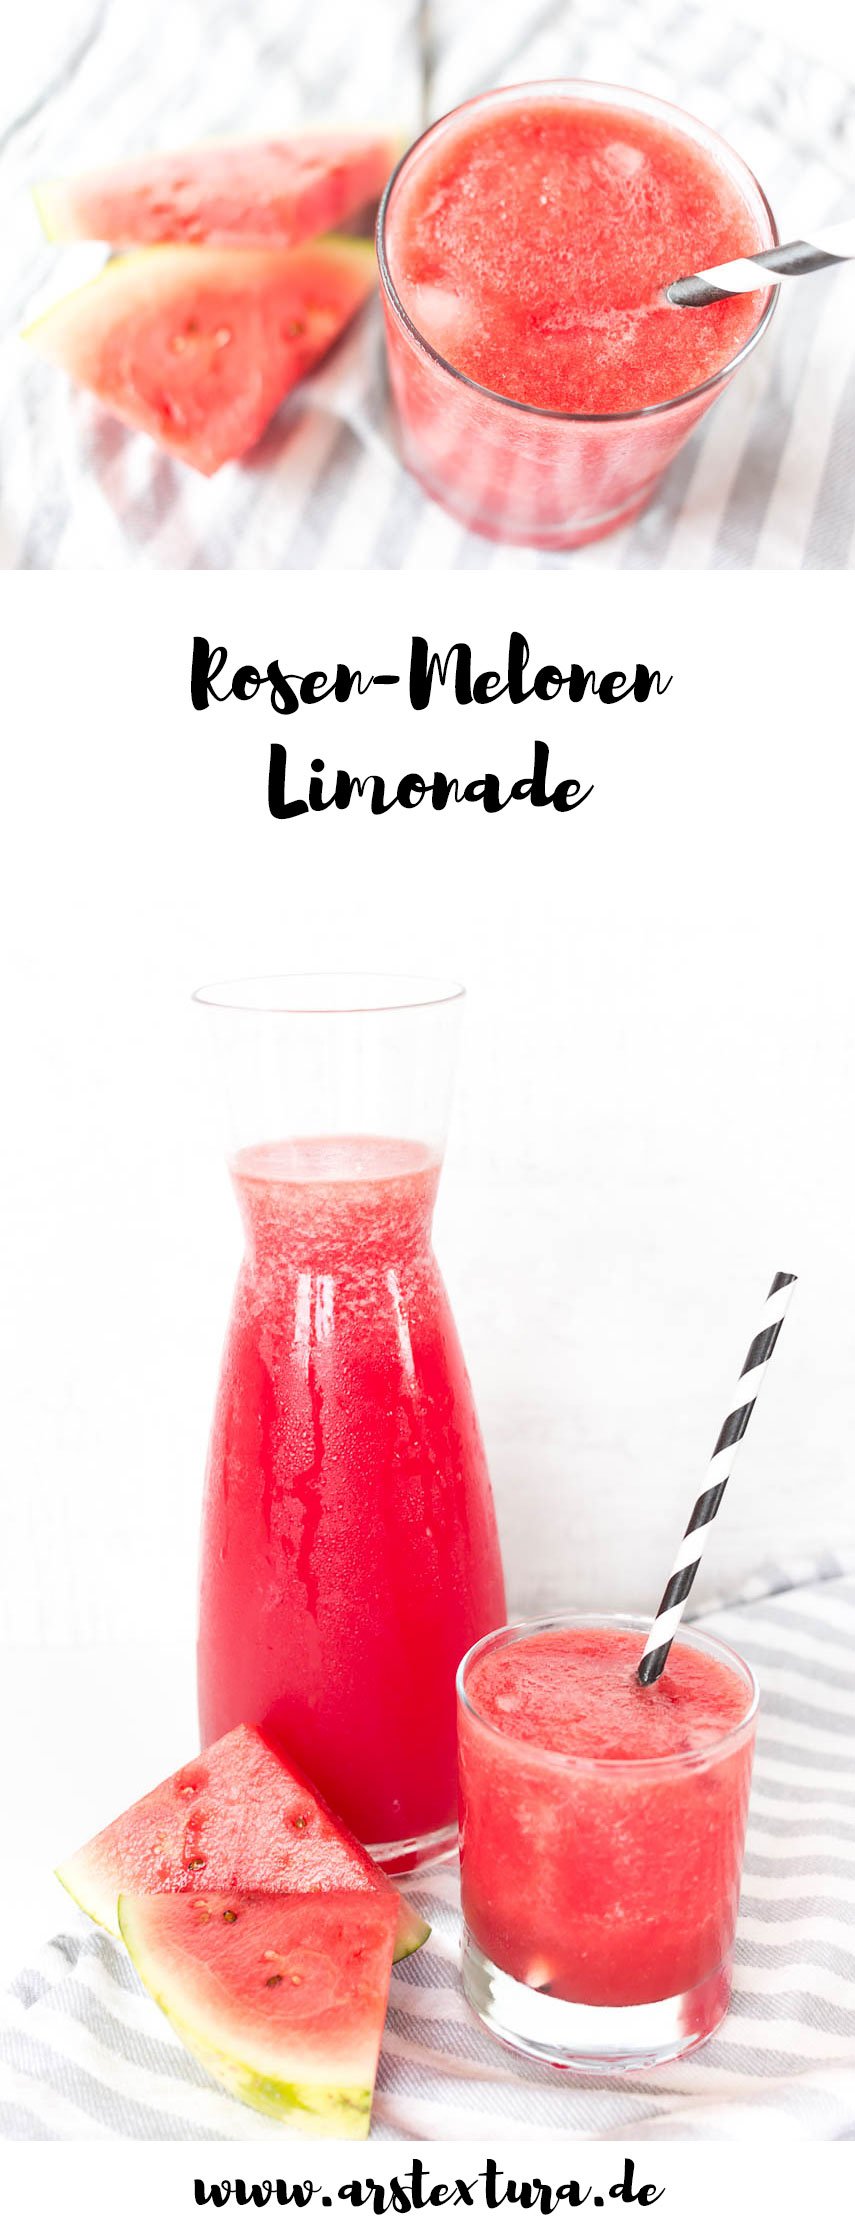 Limonade selber machen - Rezept für Rosen-Melonen Limonade